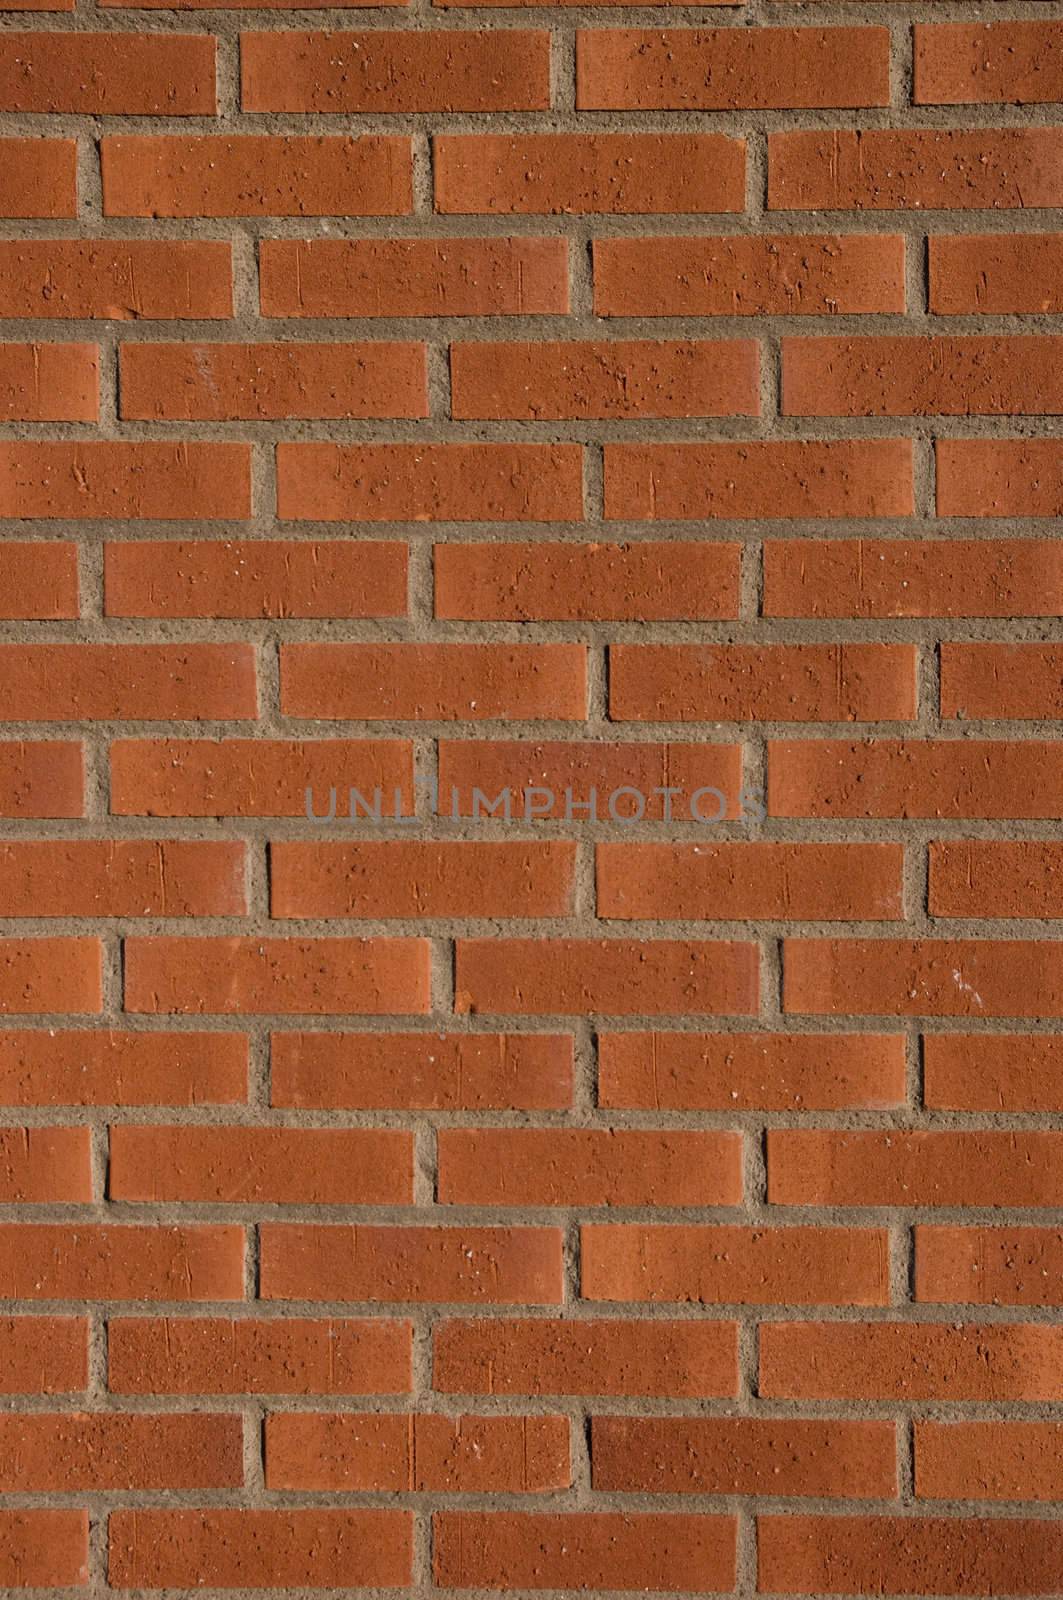 Brick Wall by peterboxy